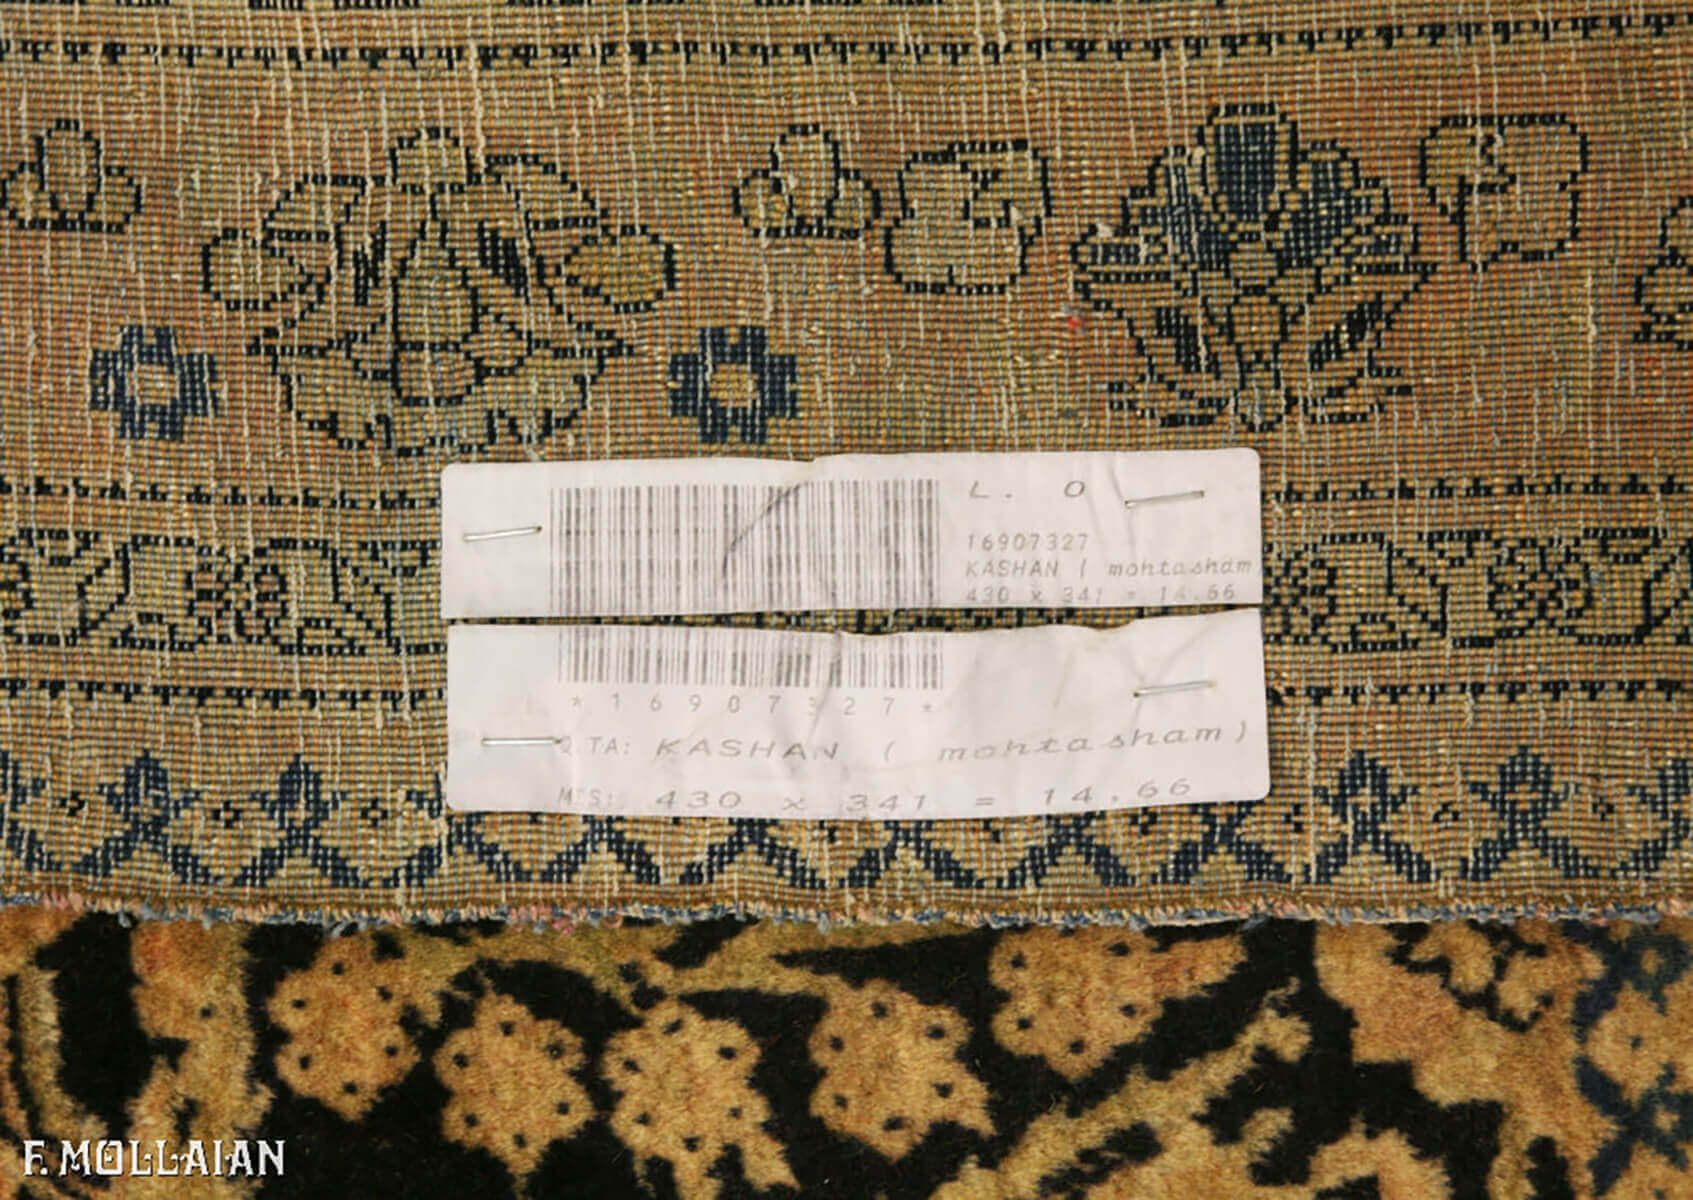 Tapis Persan Antique Kashan Mohtasham n°:16907327